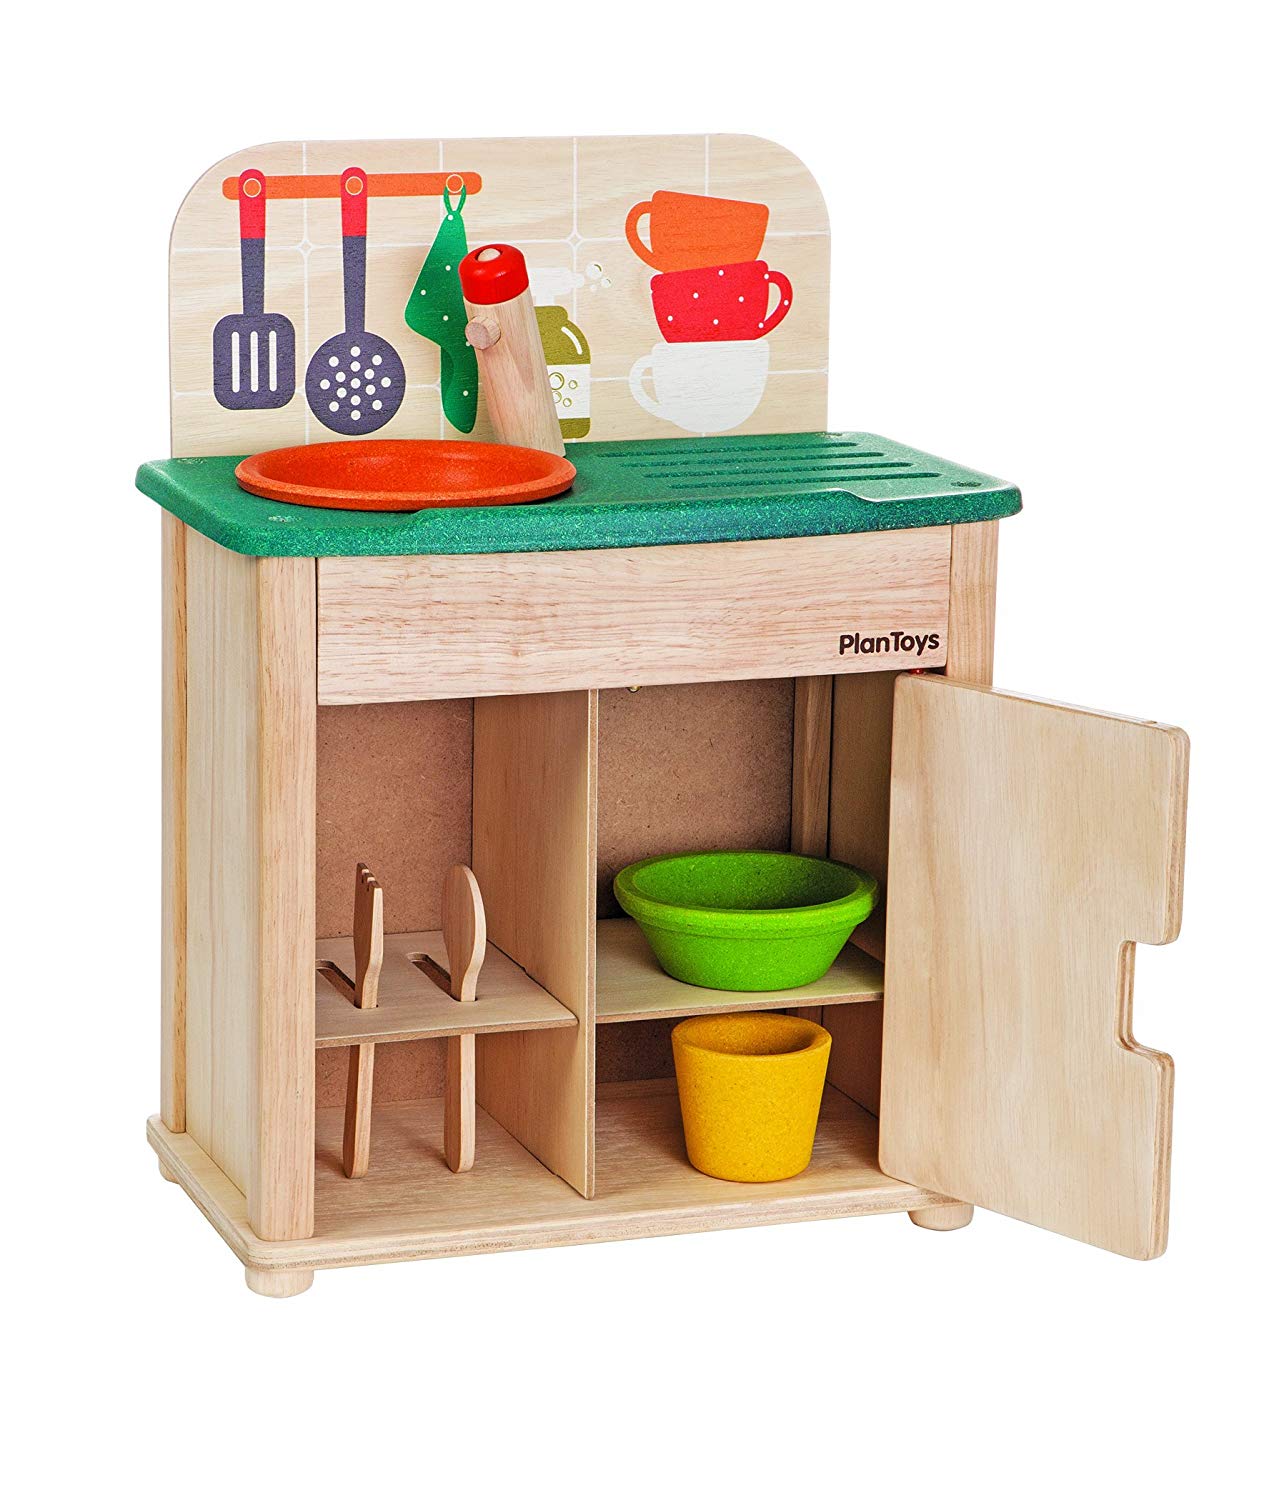 Детская игрушечная кухня с холодильником Plan Toys, 3606 